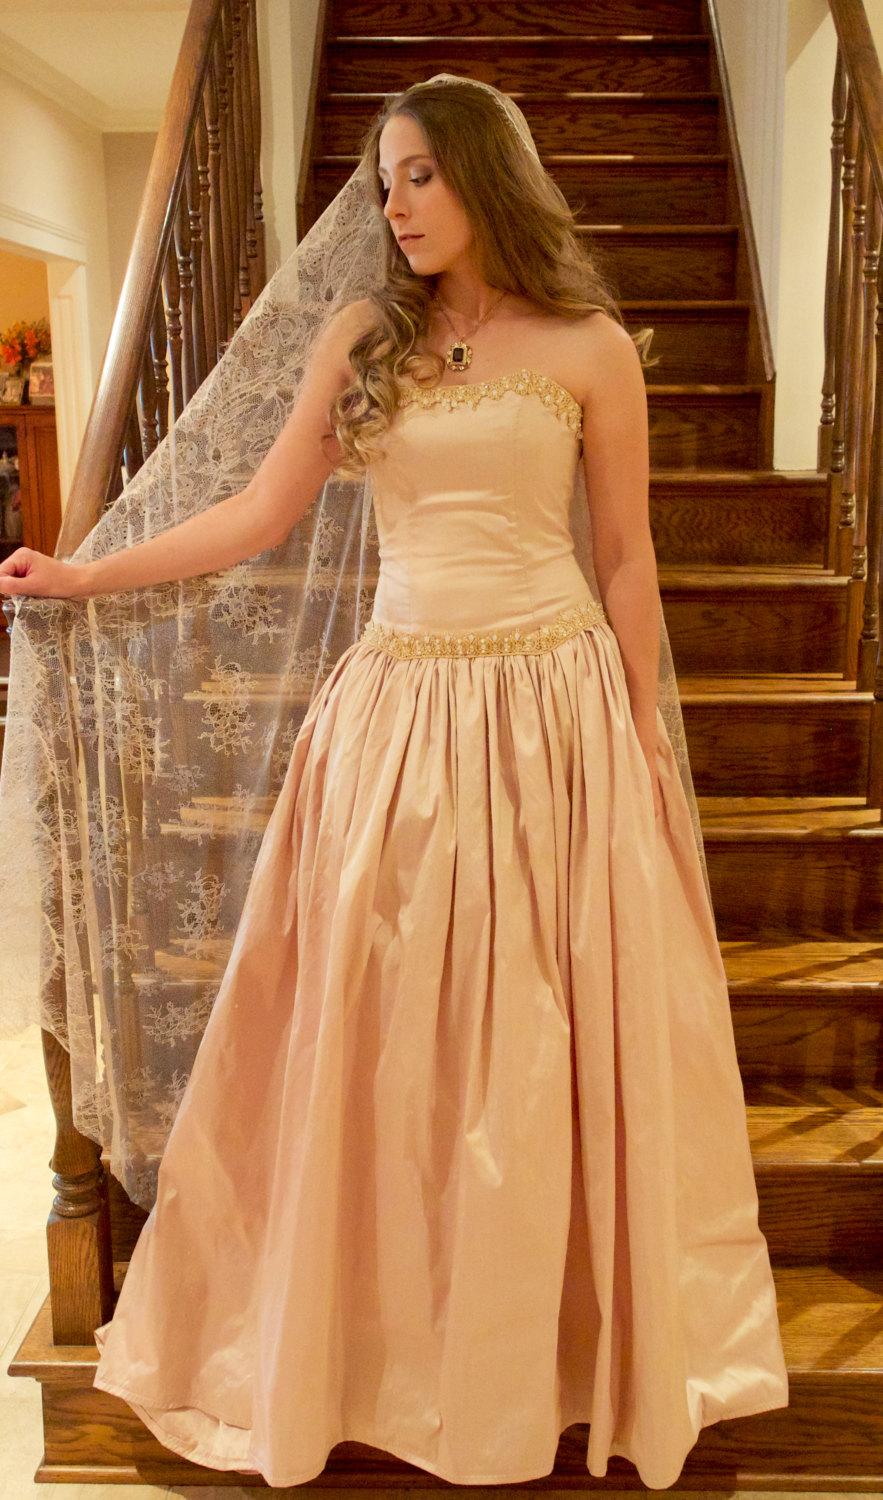 زفاف - Rose Gold Silk Ballgown Wedding Dress, Gold Lace & Crystal Buttons, Affordable and Comfortable Wedding Dress, Vintage inspired (US SIZE 6/8)